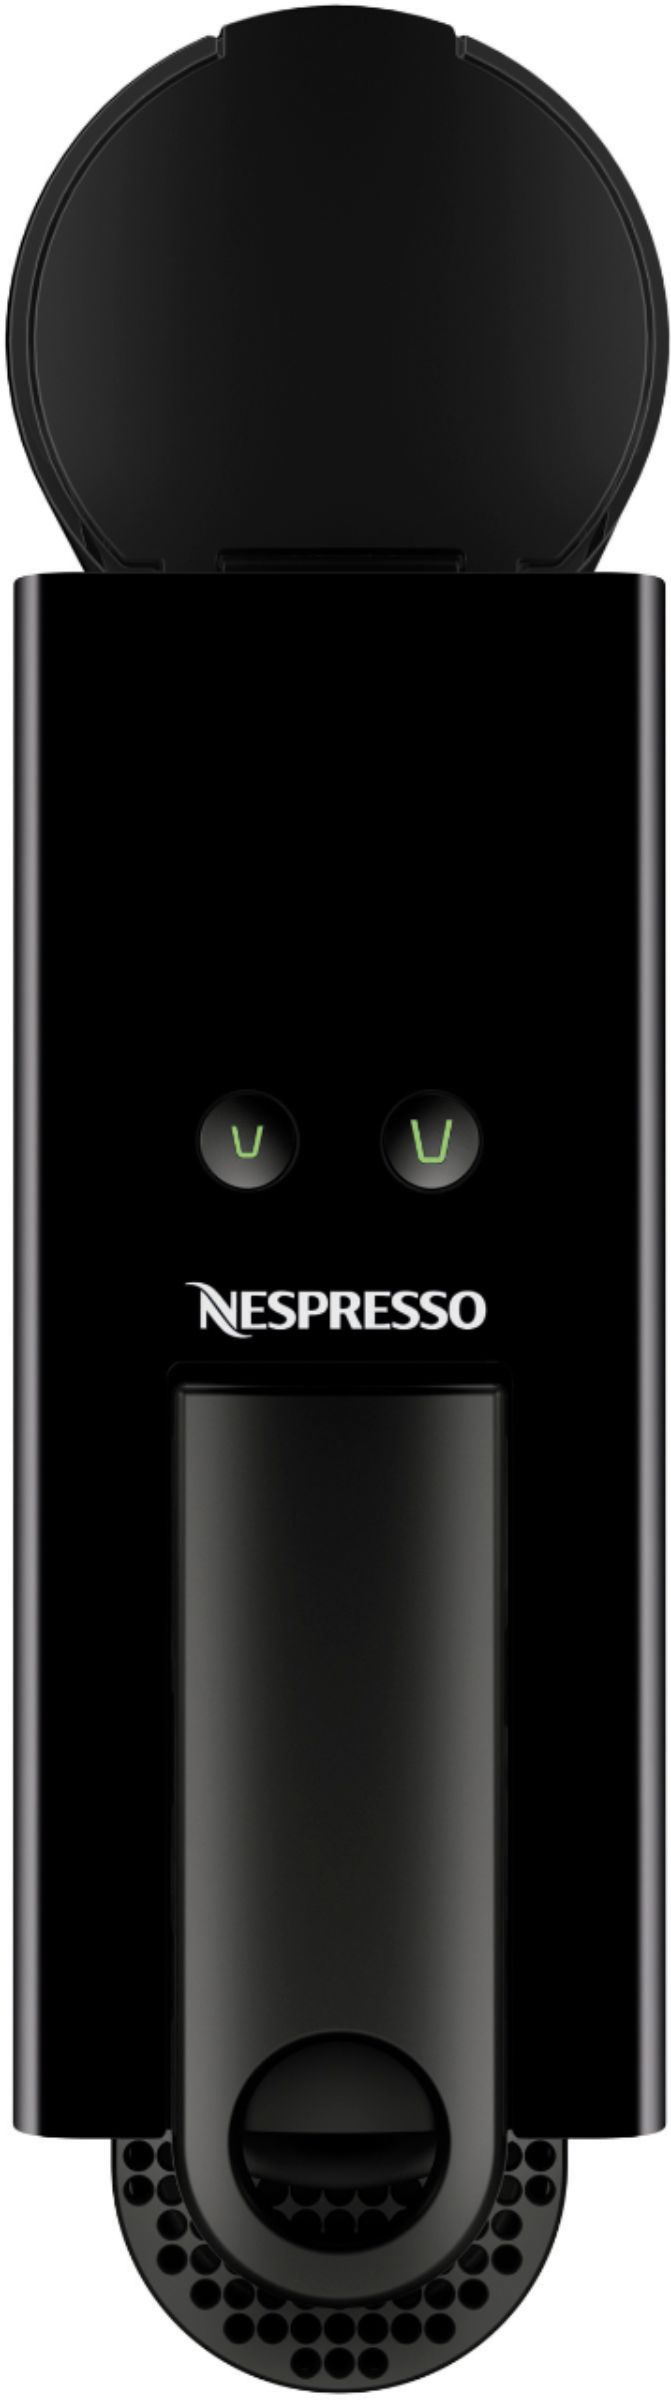 Nespresso Essenza Mini: The Complete Guide - Travelffeine